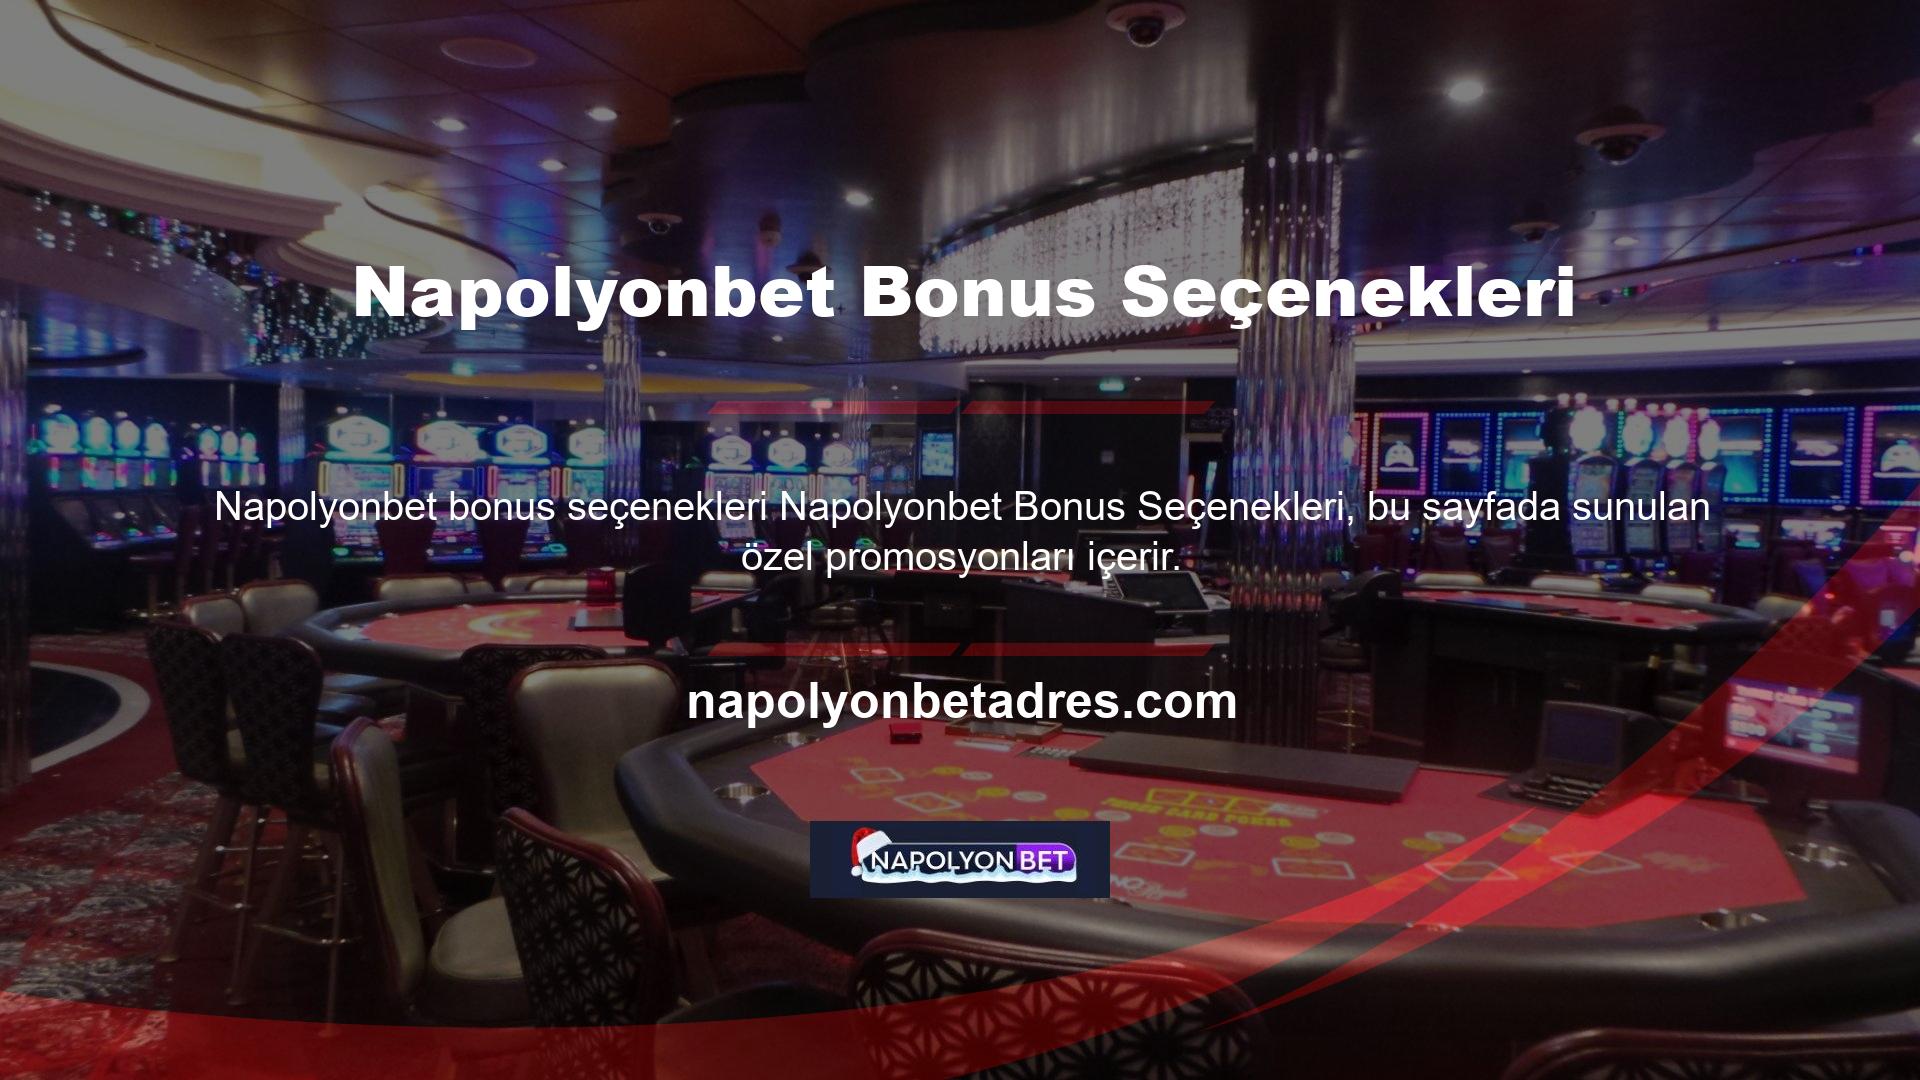 Napolyonbet Gaming, bir demo bonusu ve ardından bir hoşgeldin bonusu ile başlayan promosyonlar sunar